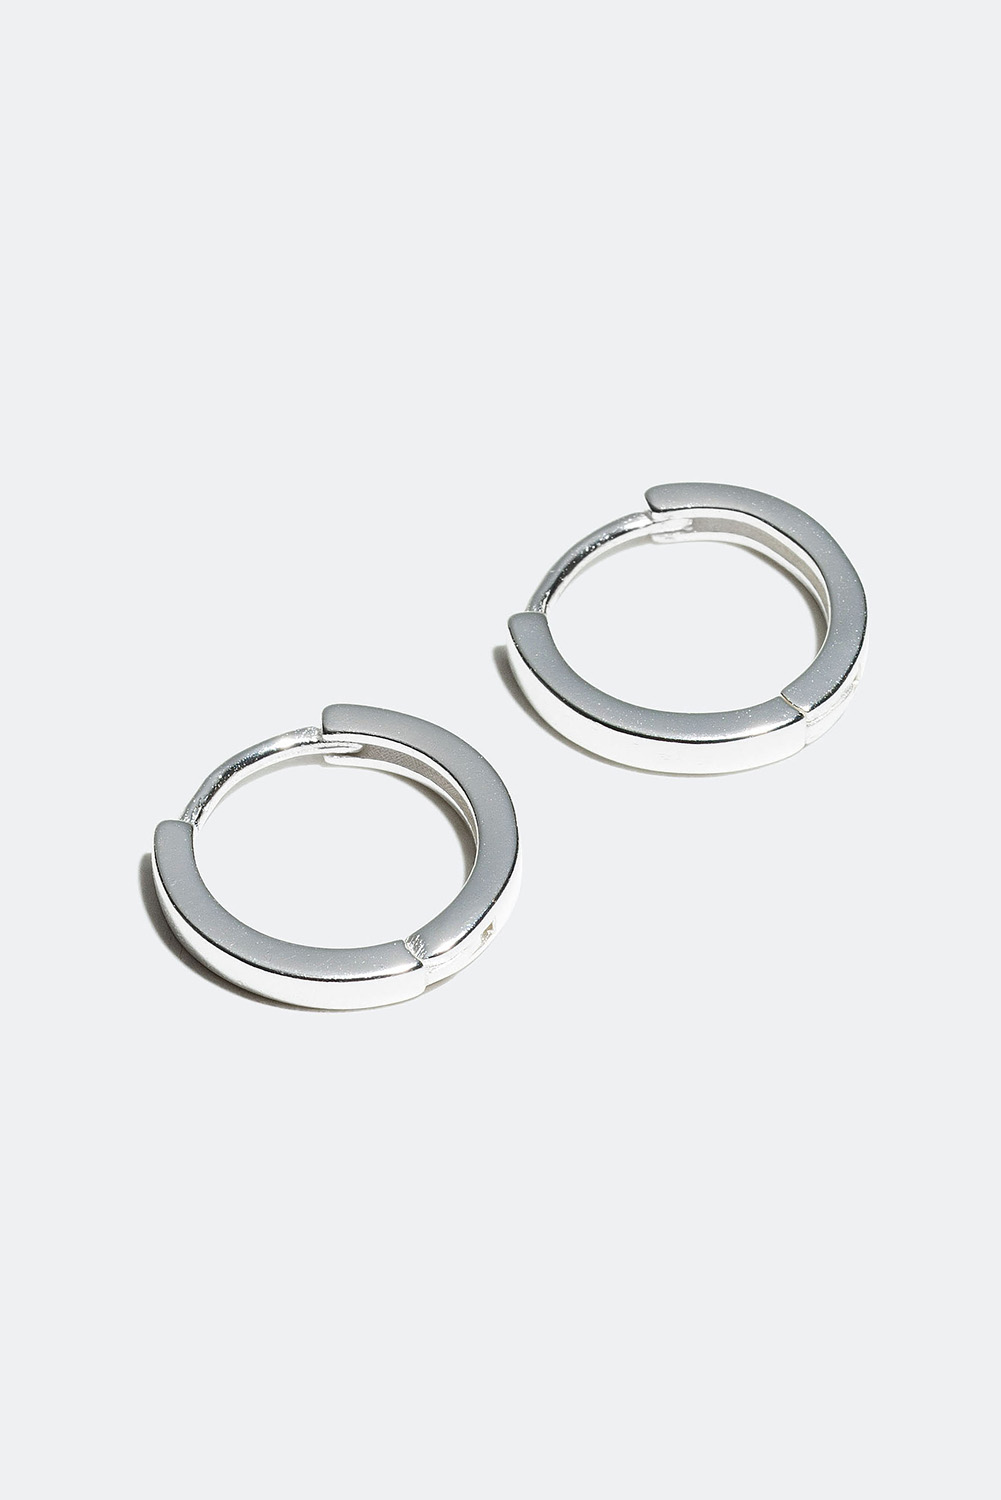 Små flate øreringer i ekte sølv, 1 cm i gruppen Ekte sølv / Sølvøredobber / Øreringer i ekte sølv hos Glitter (327321011000)